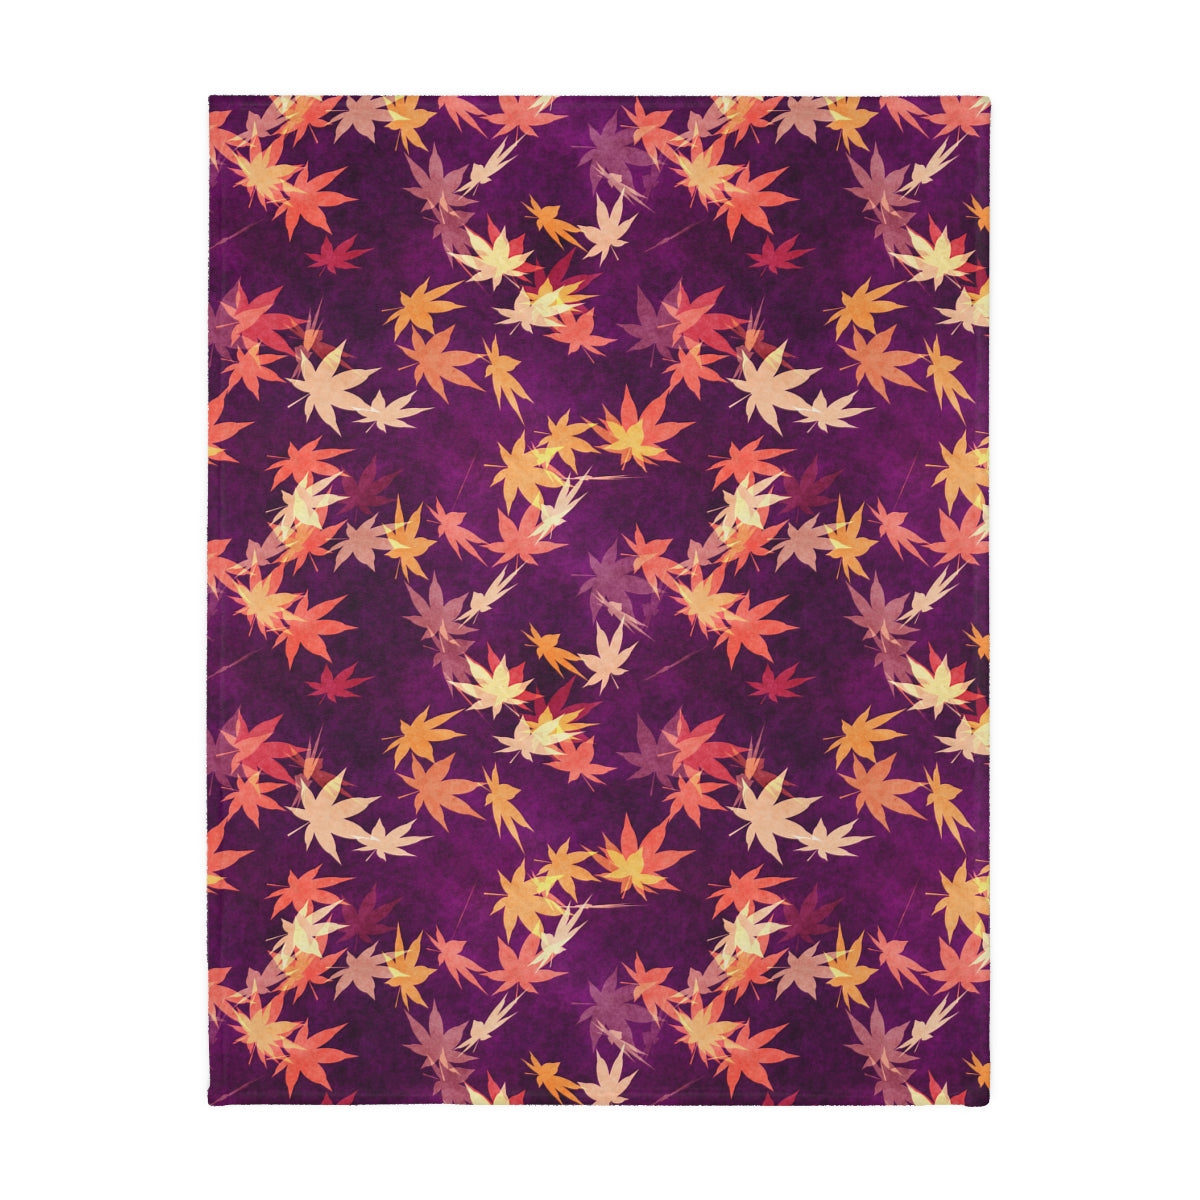 Autumn Leaves Velveteen Minky Blanket (Two-sided print)